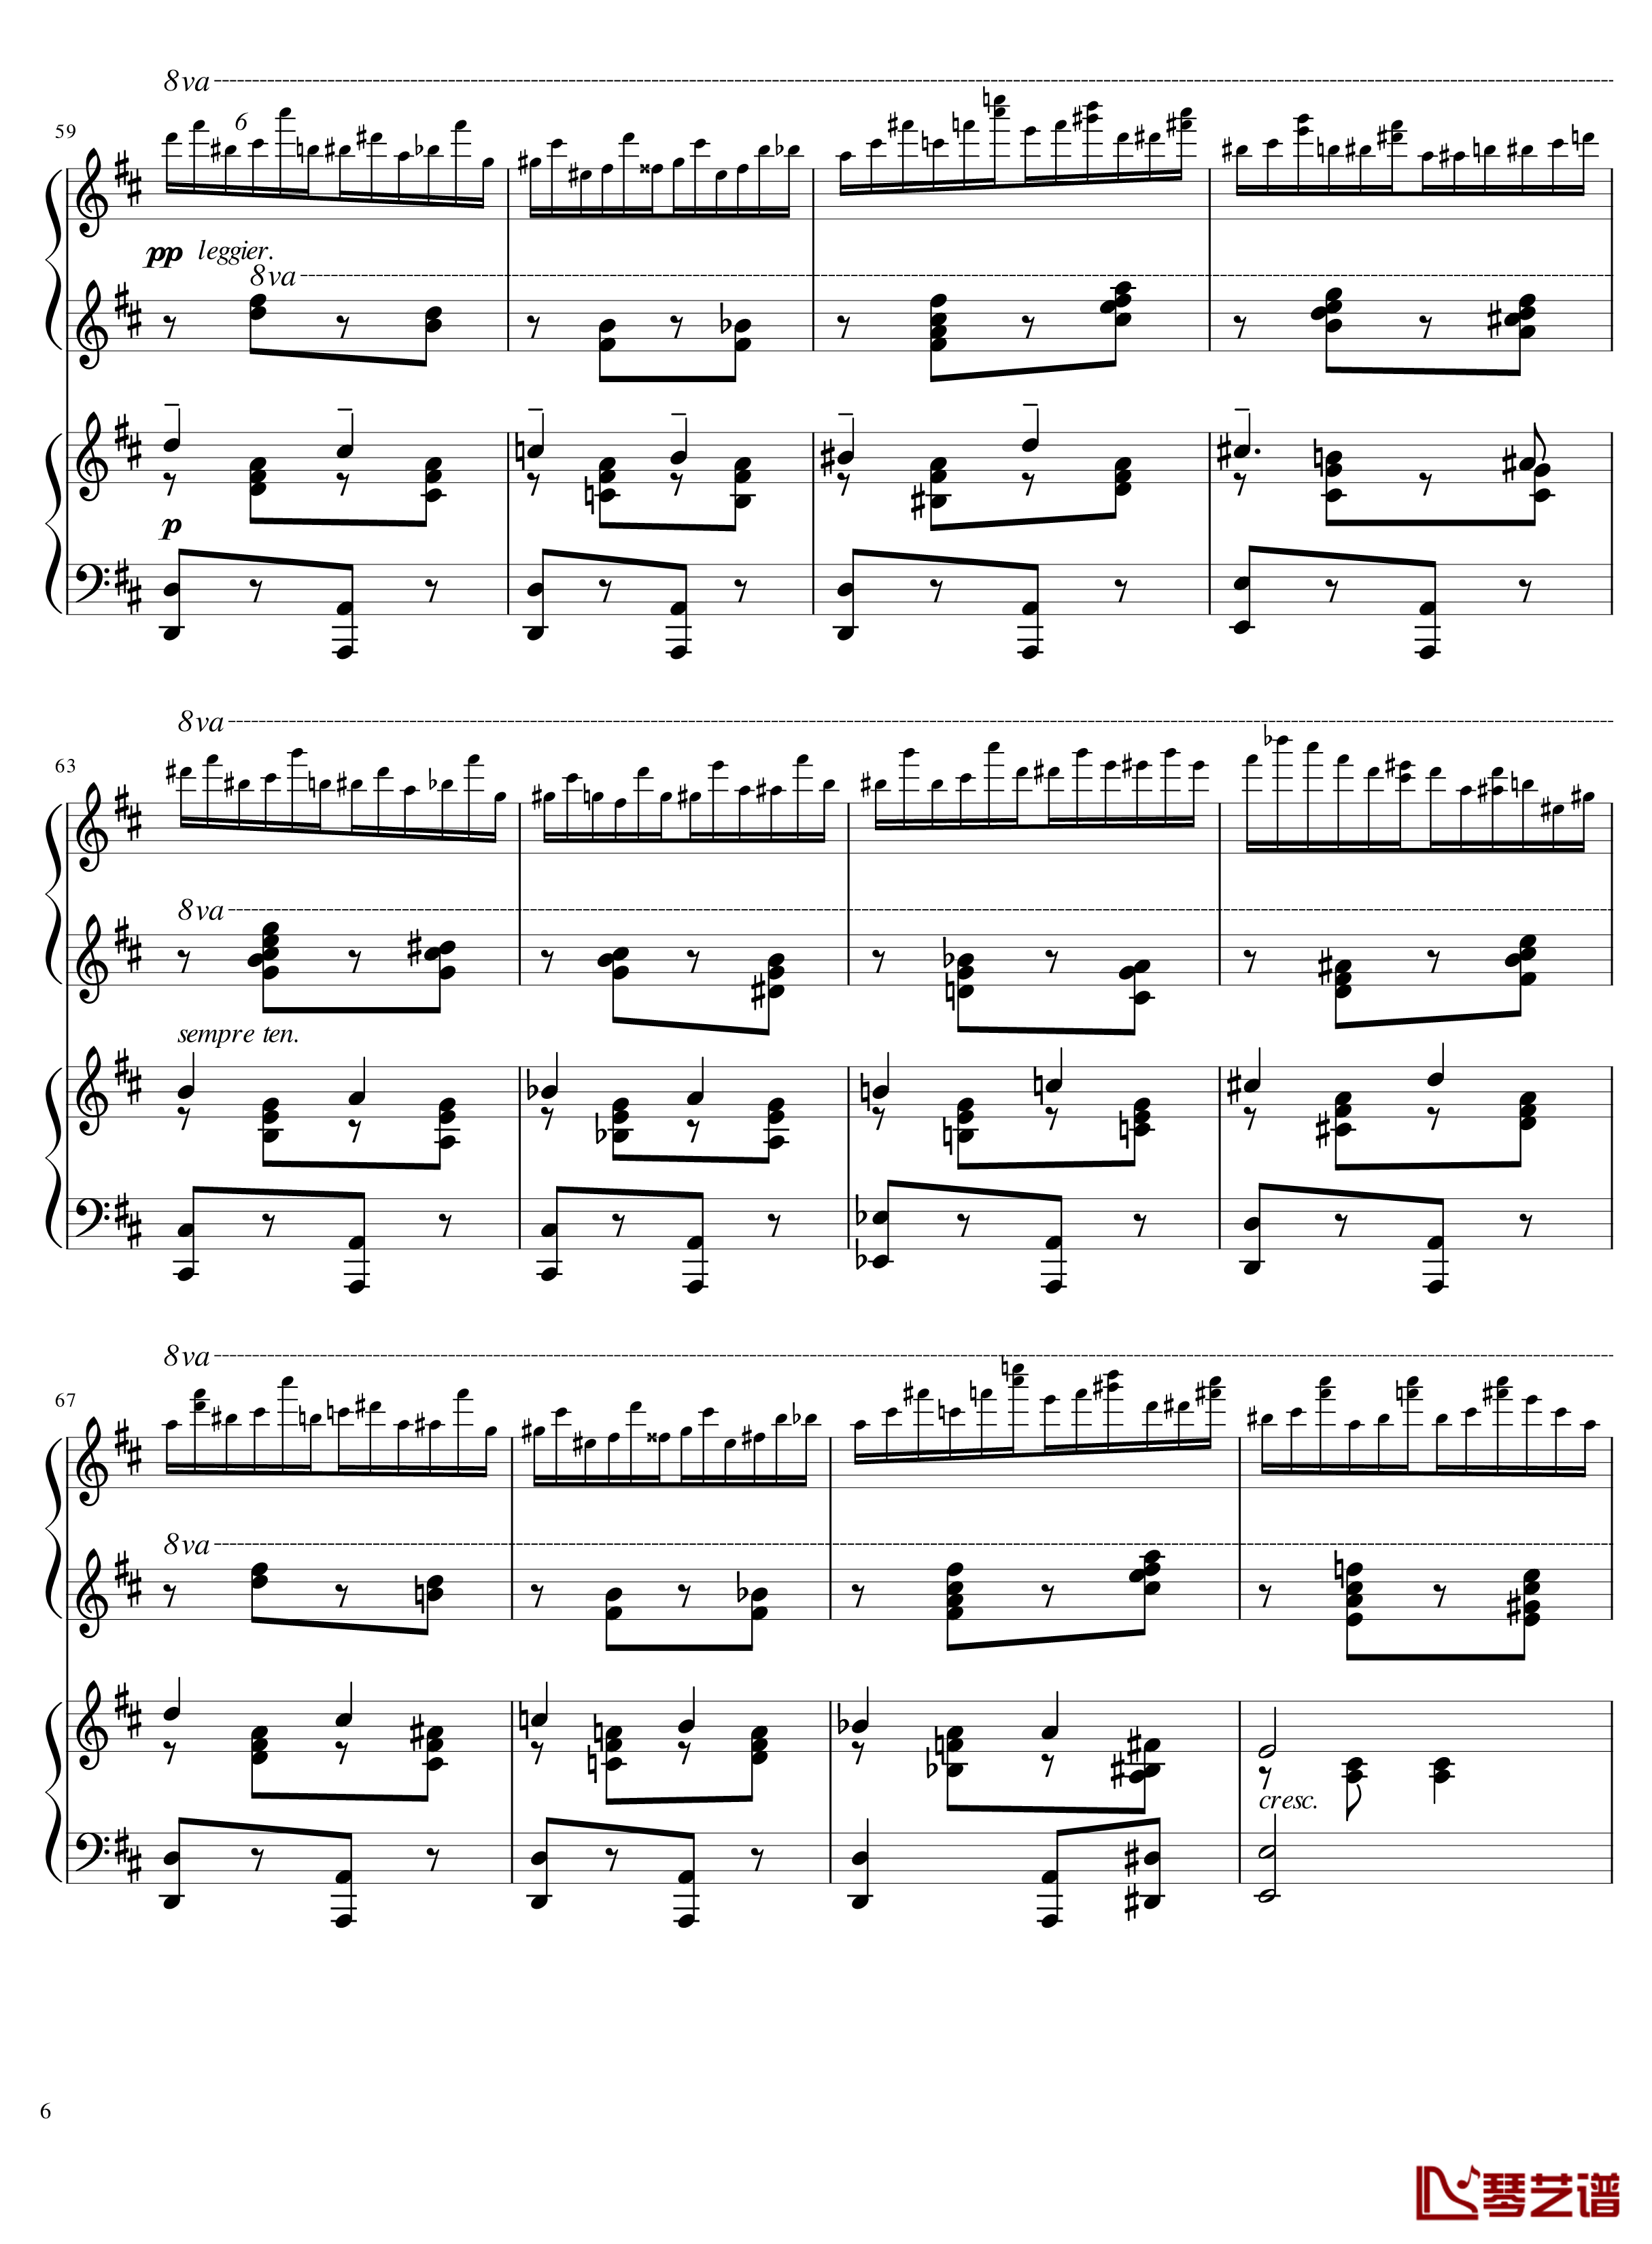 Italian Polka钢琴谱-意大利波尔卡-拉赫马尼若夫6